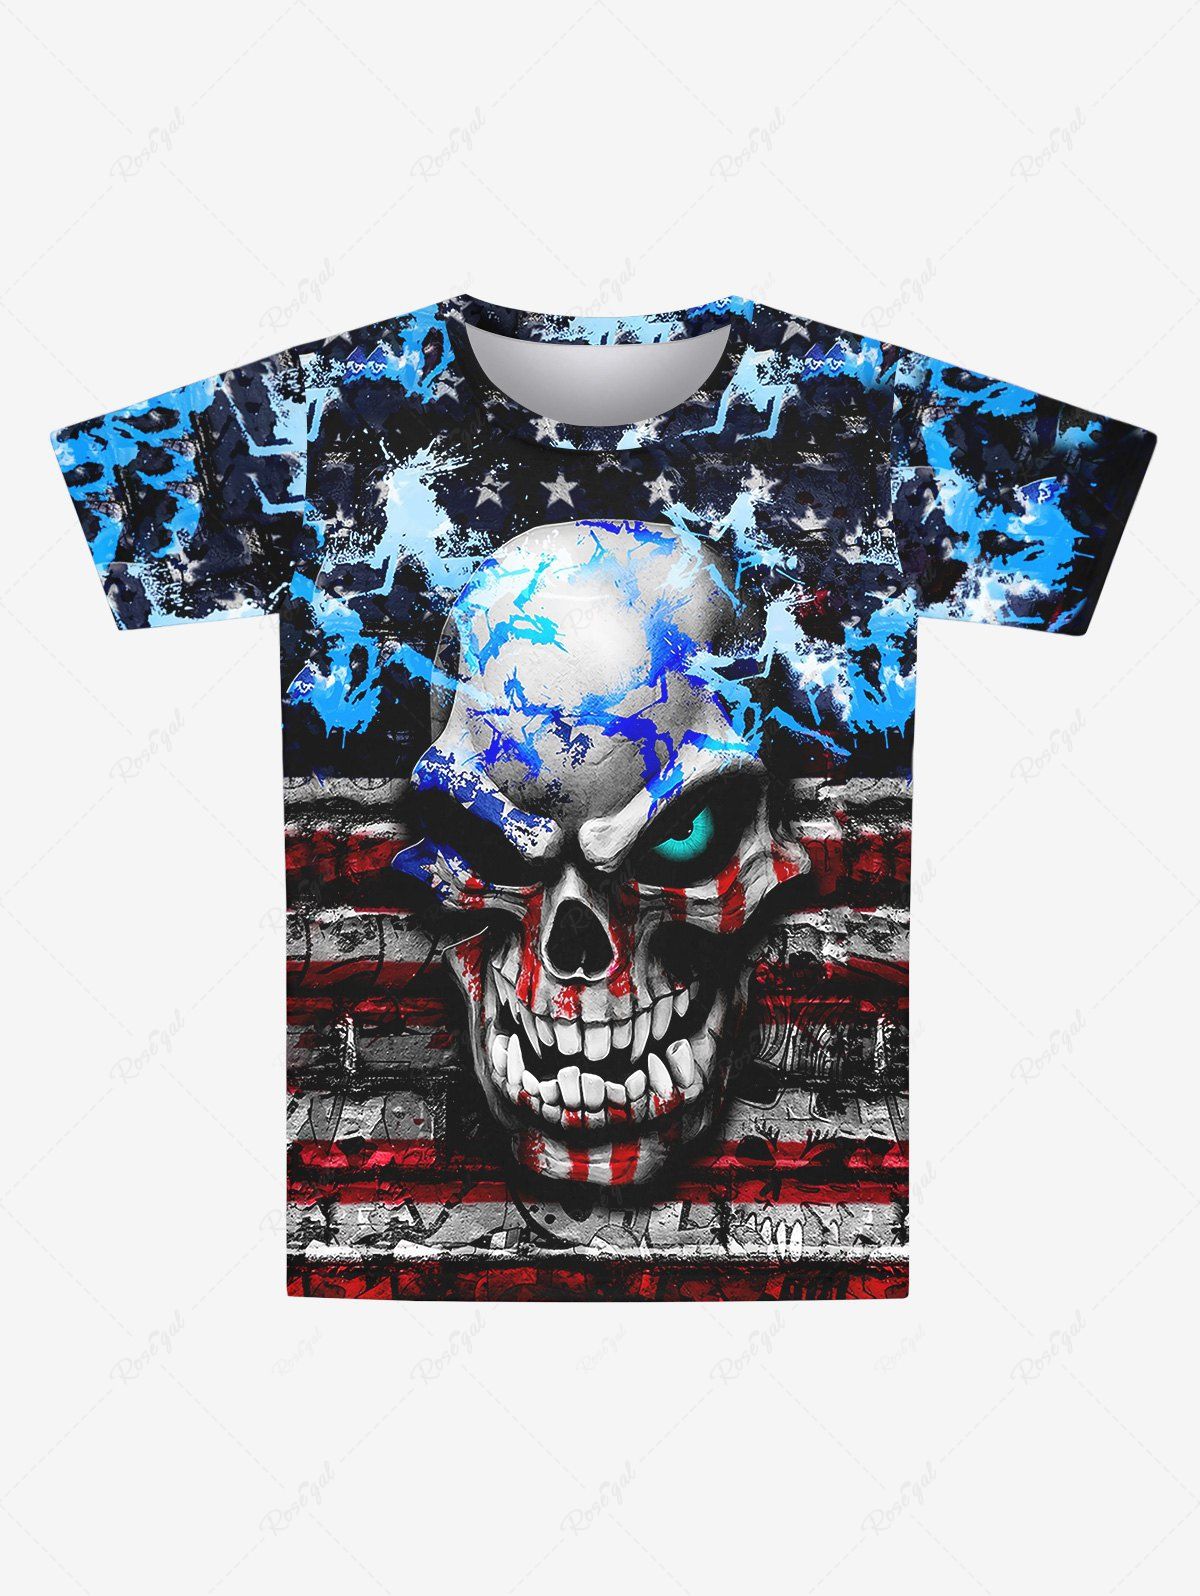 Store Gothic 3D Skull Striped Distressed Paint Pentagram Print Short Sleeves T-shirt For Men  